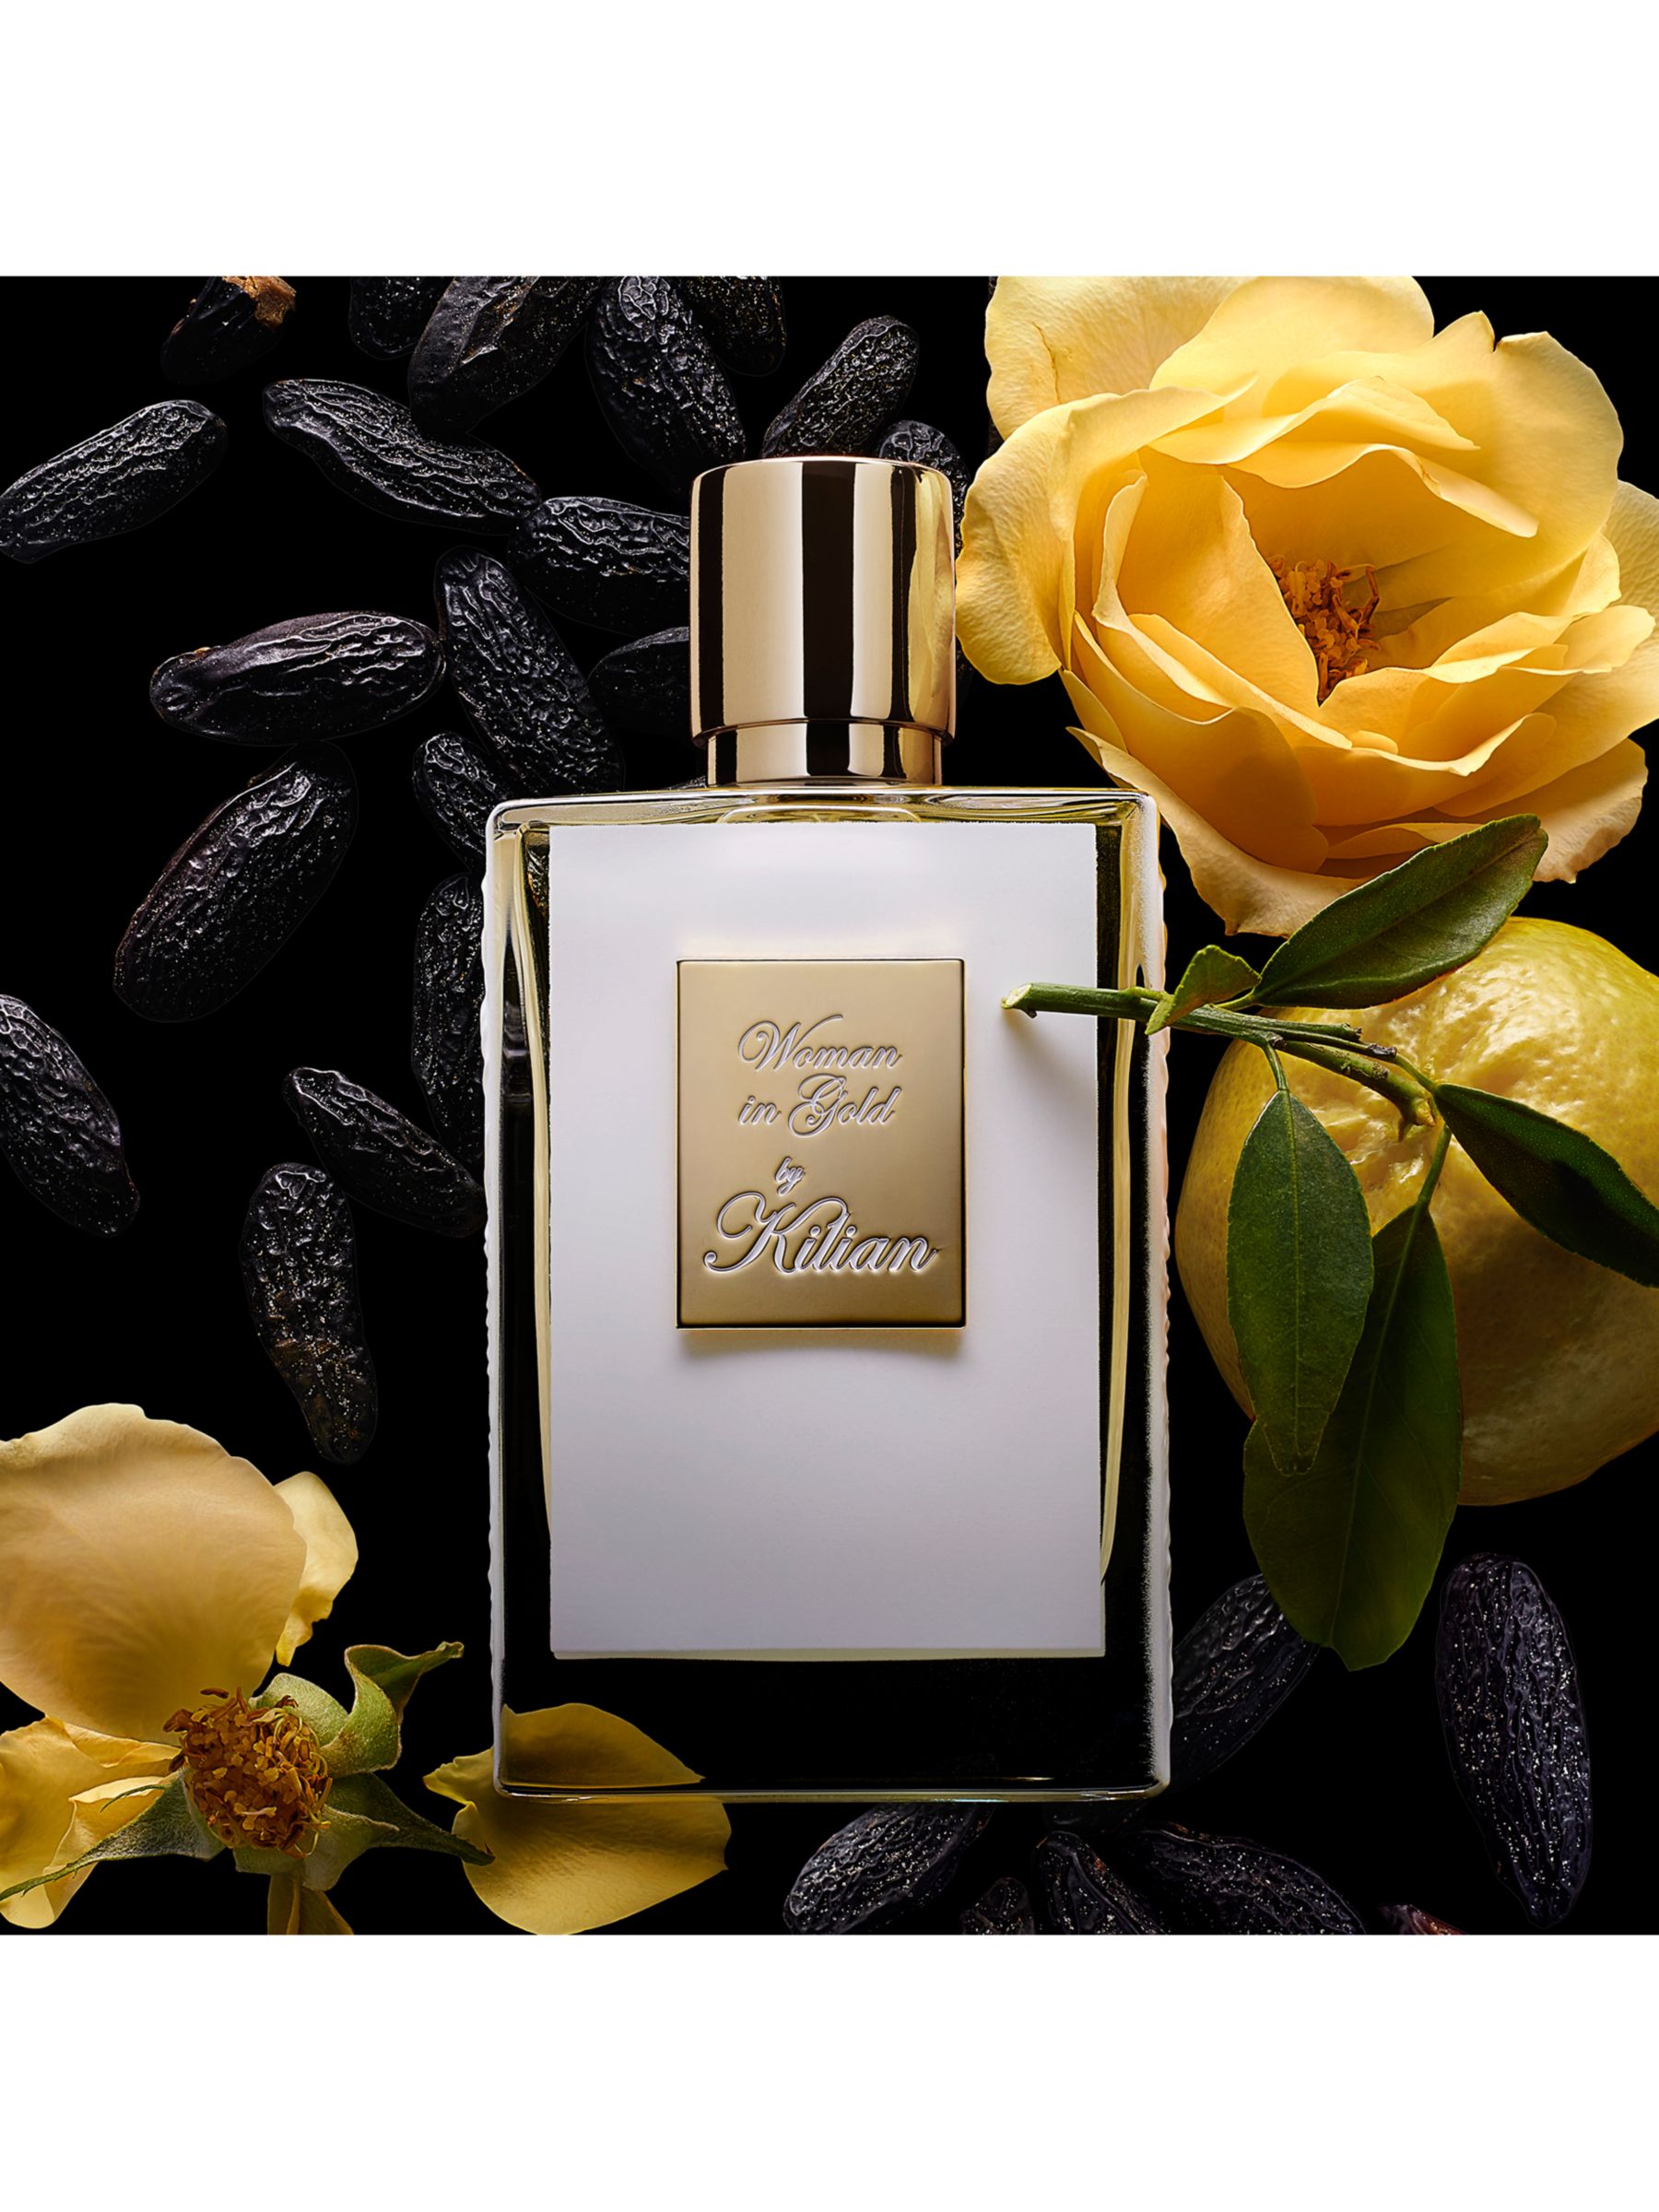 KILIAN PARIS Woman In Gold Eau de Parfum, 50ml 5